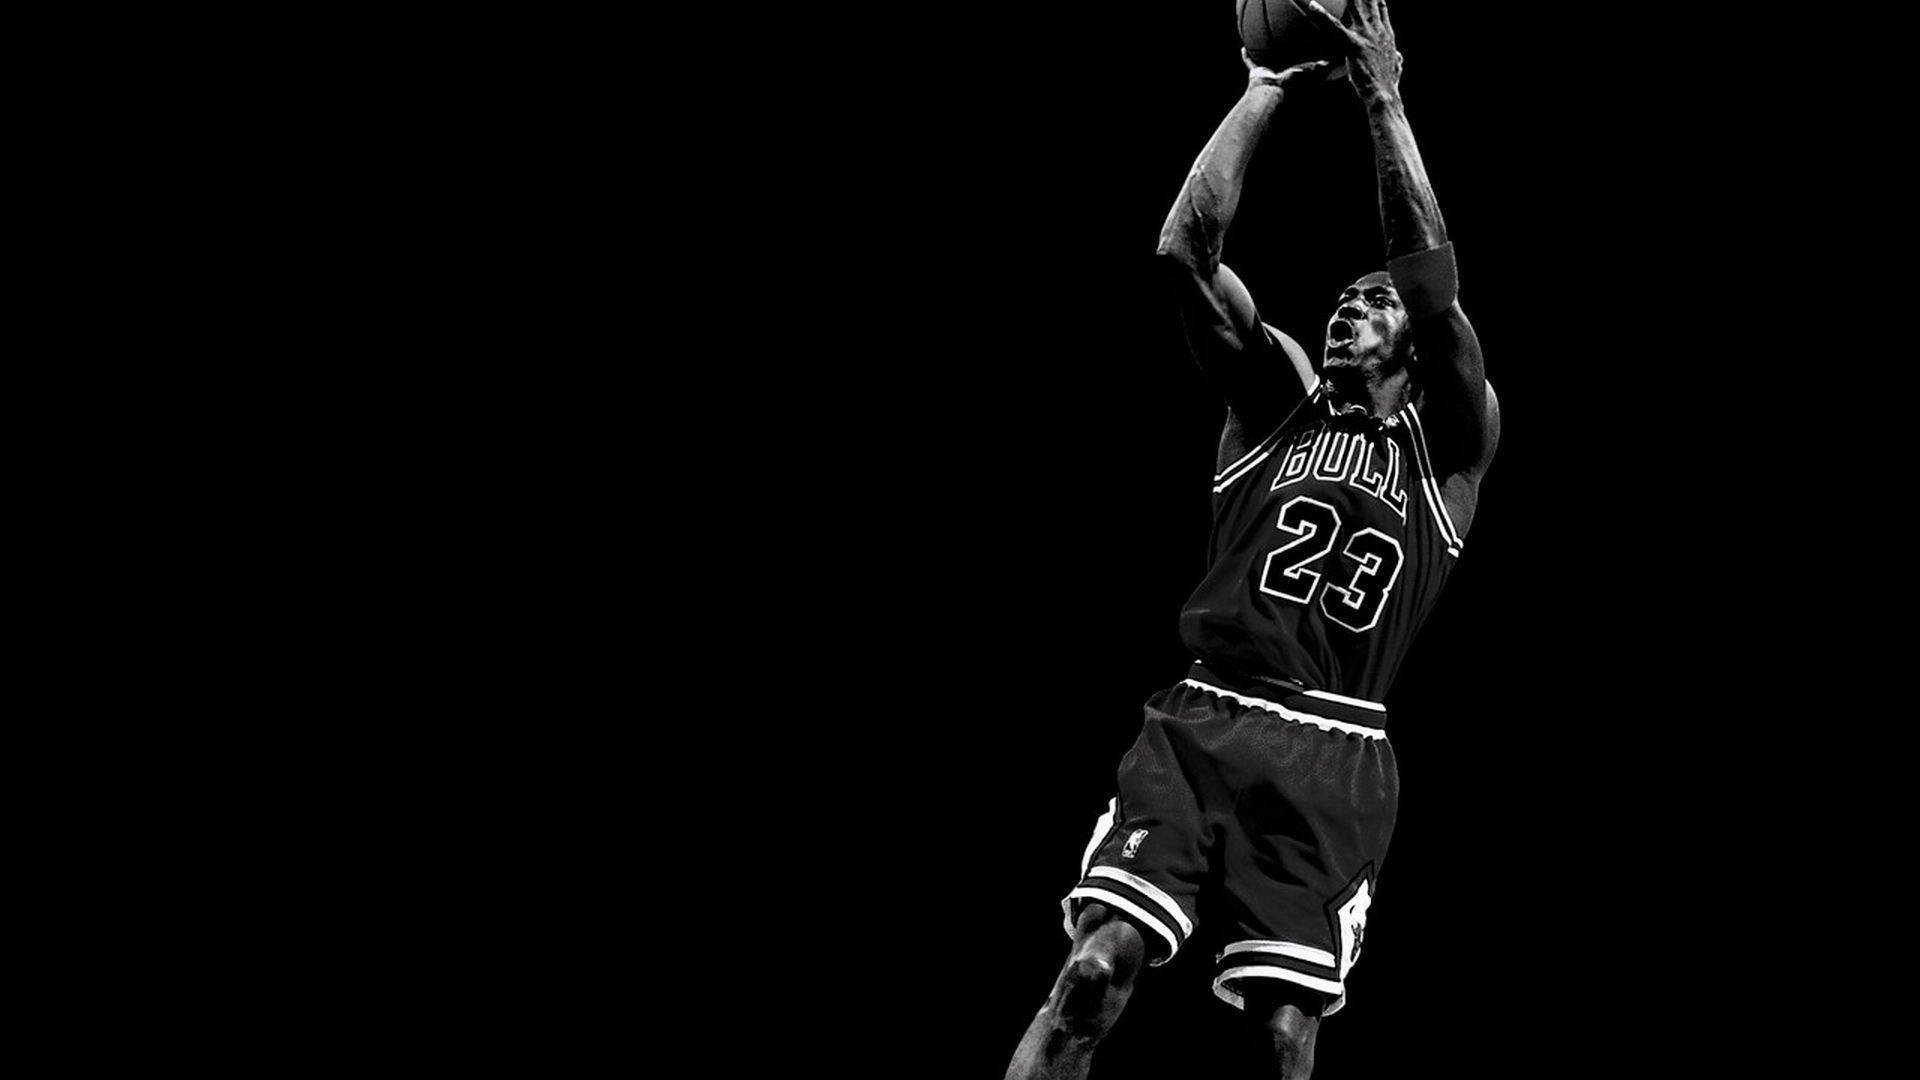 Best Cool Michael Jordan Picture